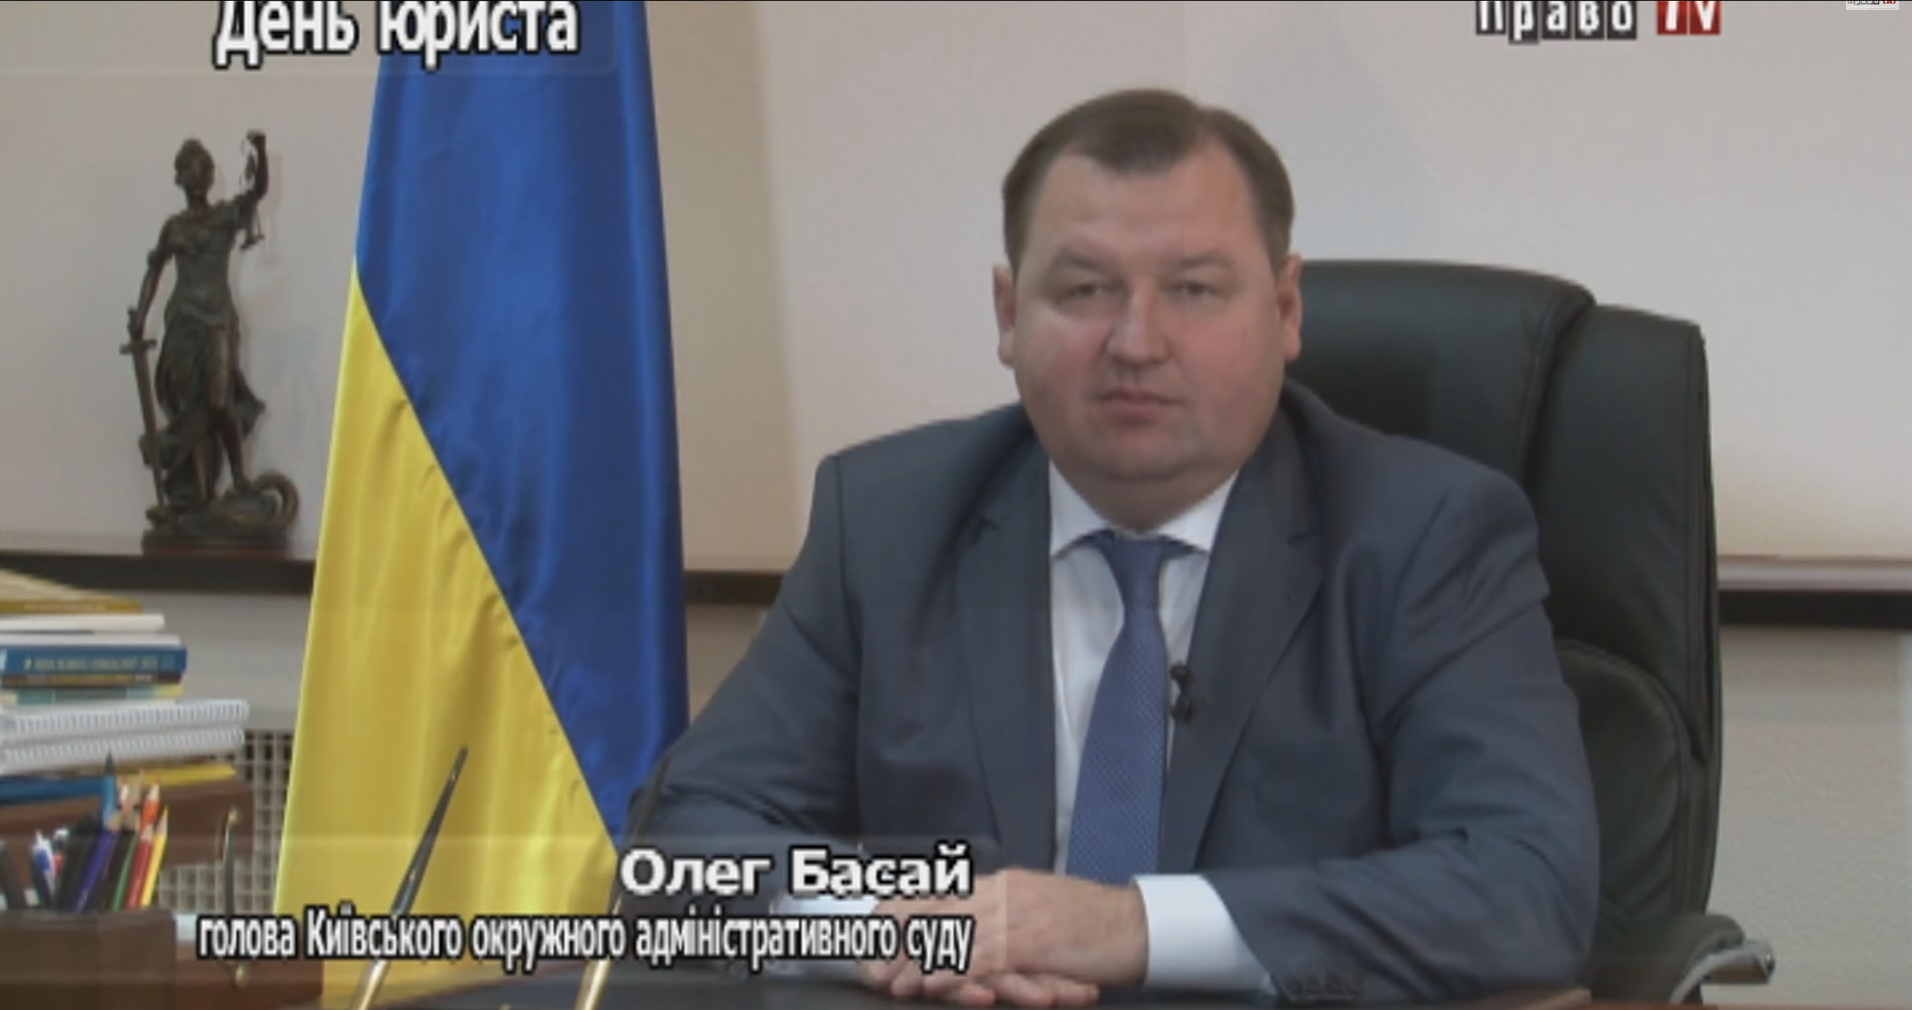 Поздравление главы Киевского окружного административного суда Олега Басая ко Дню Юриста